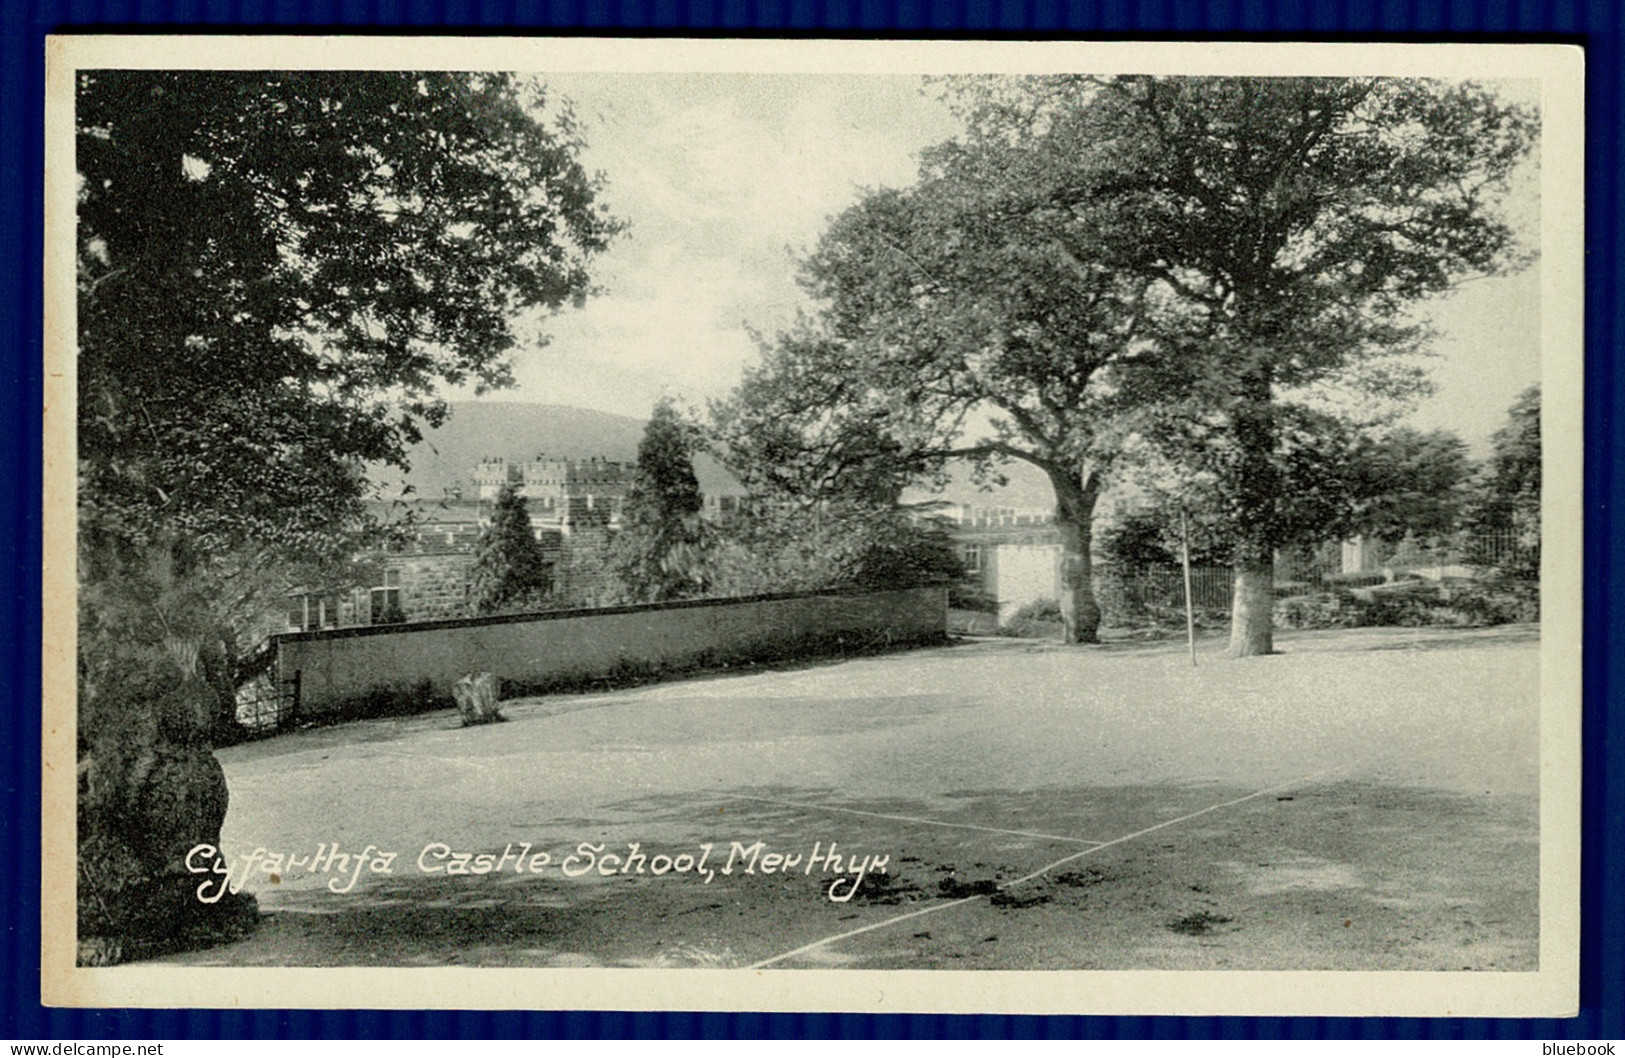 Ref 1603 - Early Postcard - Cyfartha Castle School Gardens Looking Over - MerthyrTydfil - Glamorgan